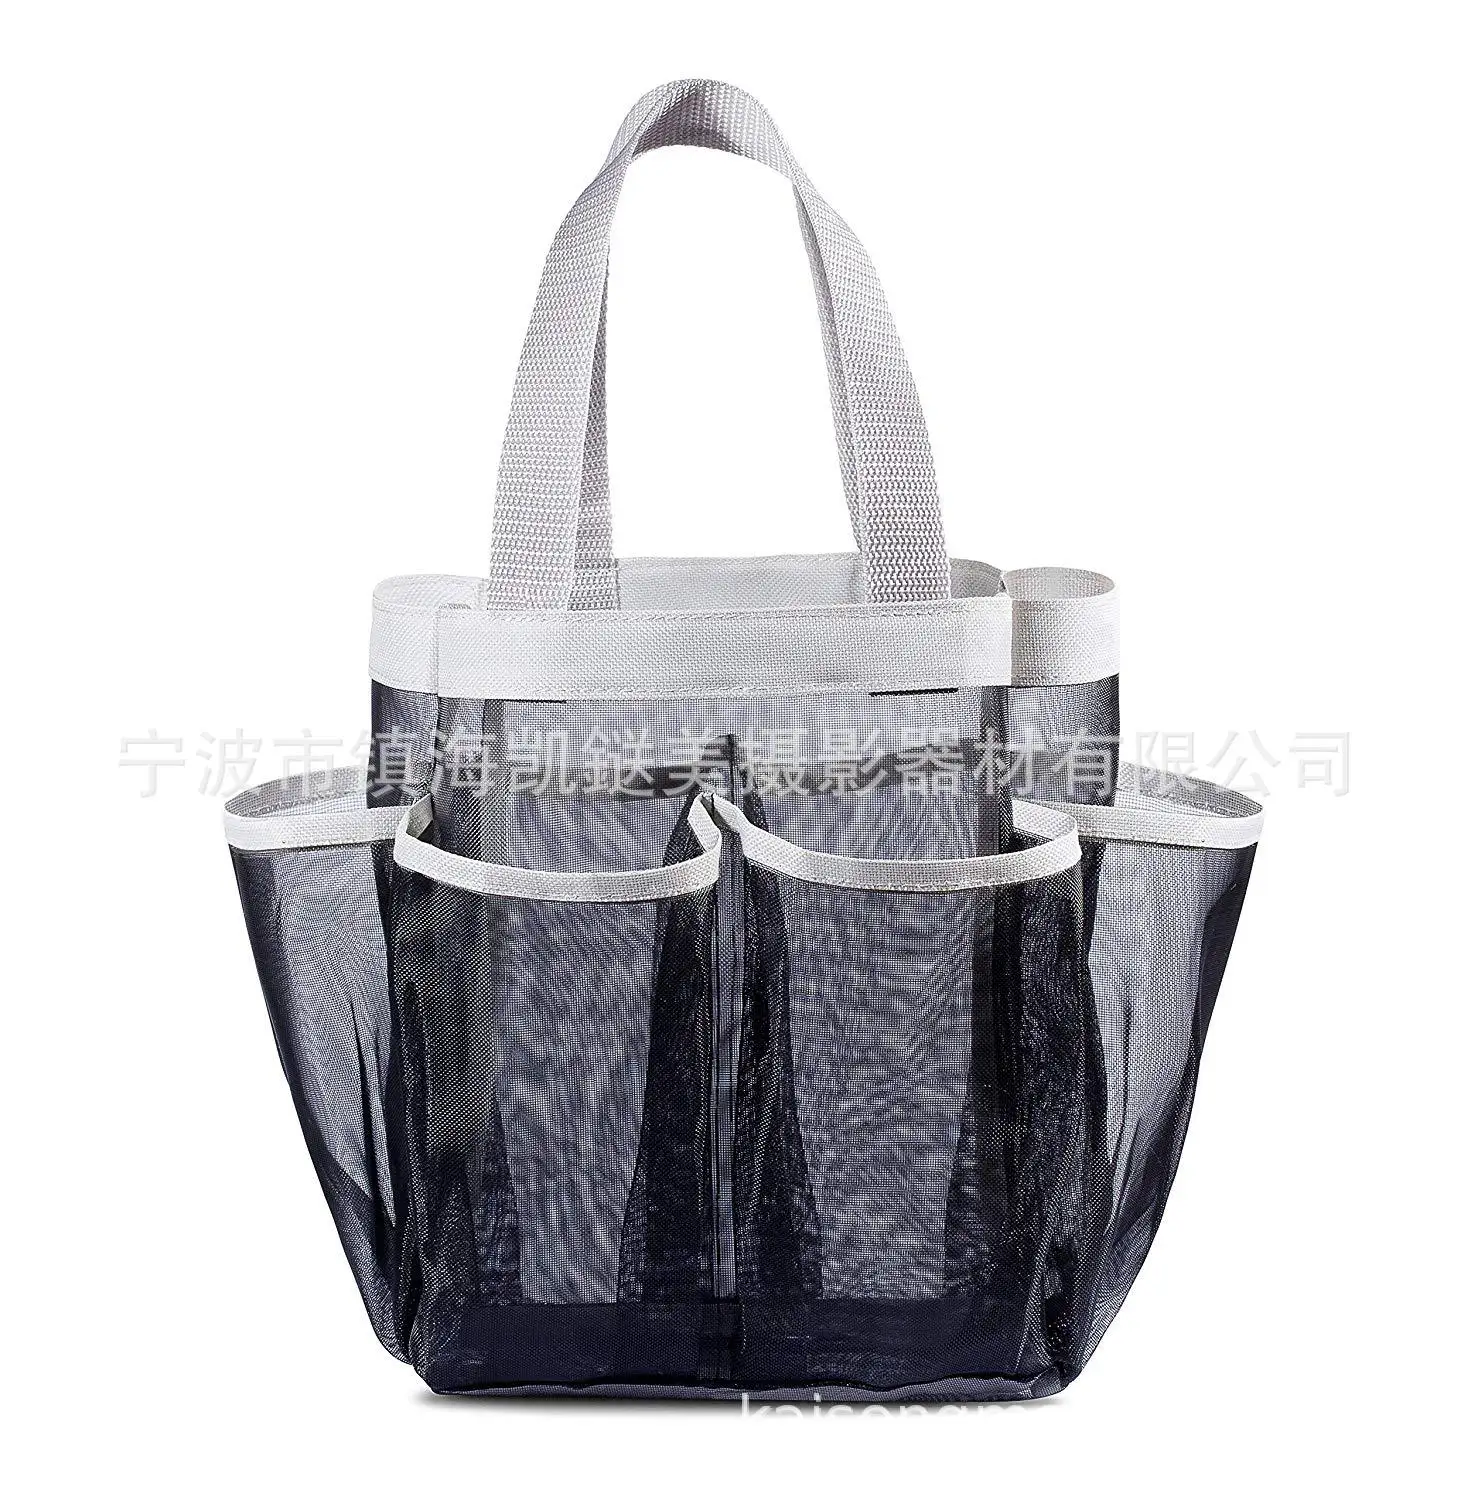 Ebay, Amazon AliExpress shuang ti shou органайзер для душа 7 сетка подвесная сумка для хранения, моющаяся сумка Оксфорд ткань тонкая сетка